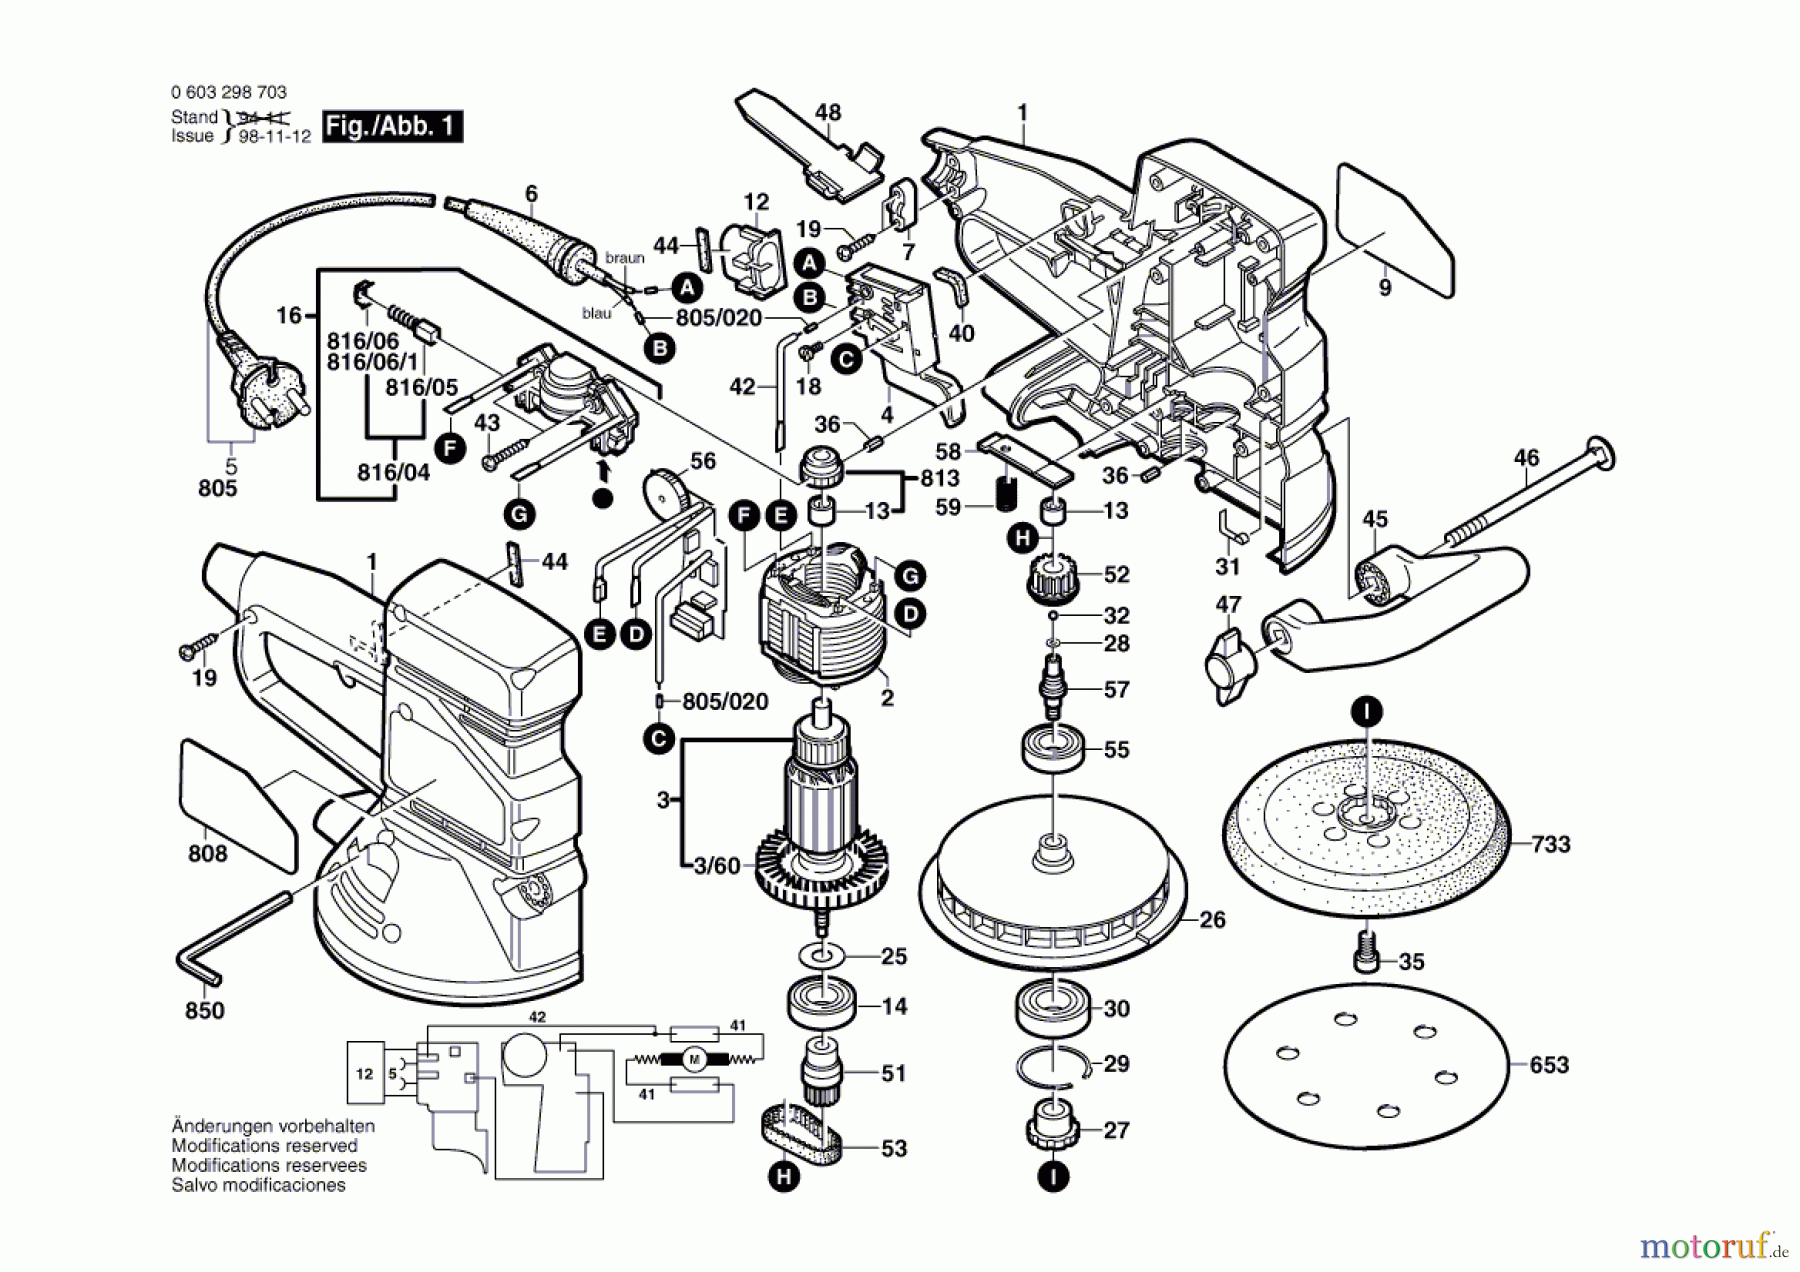  Bosch Werkzeug Exzenterschleifer PEX 15 AE Seite 1